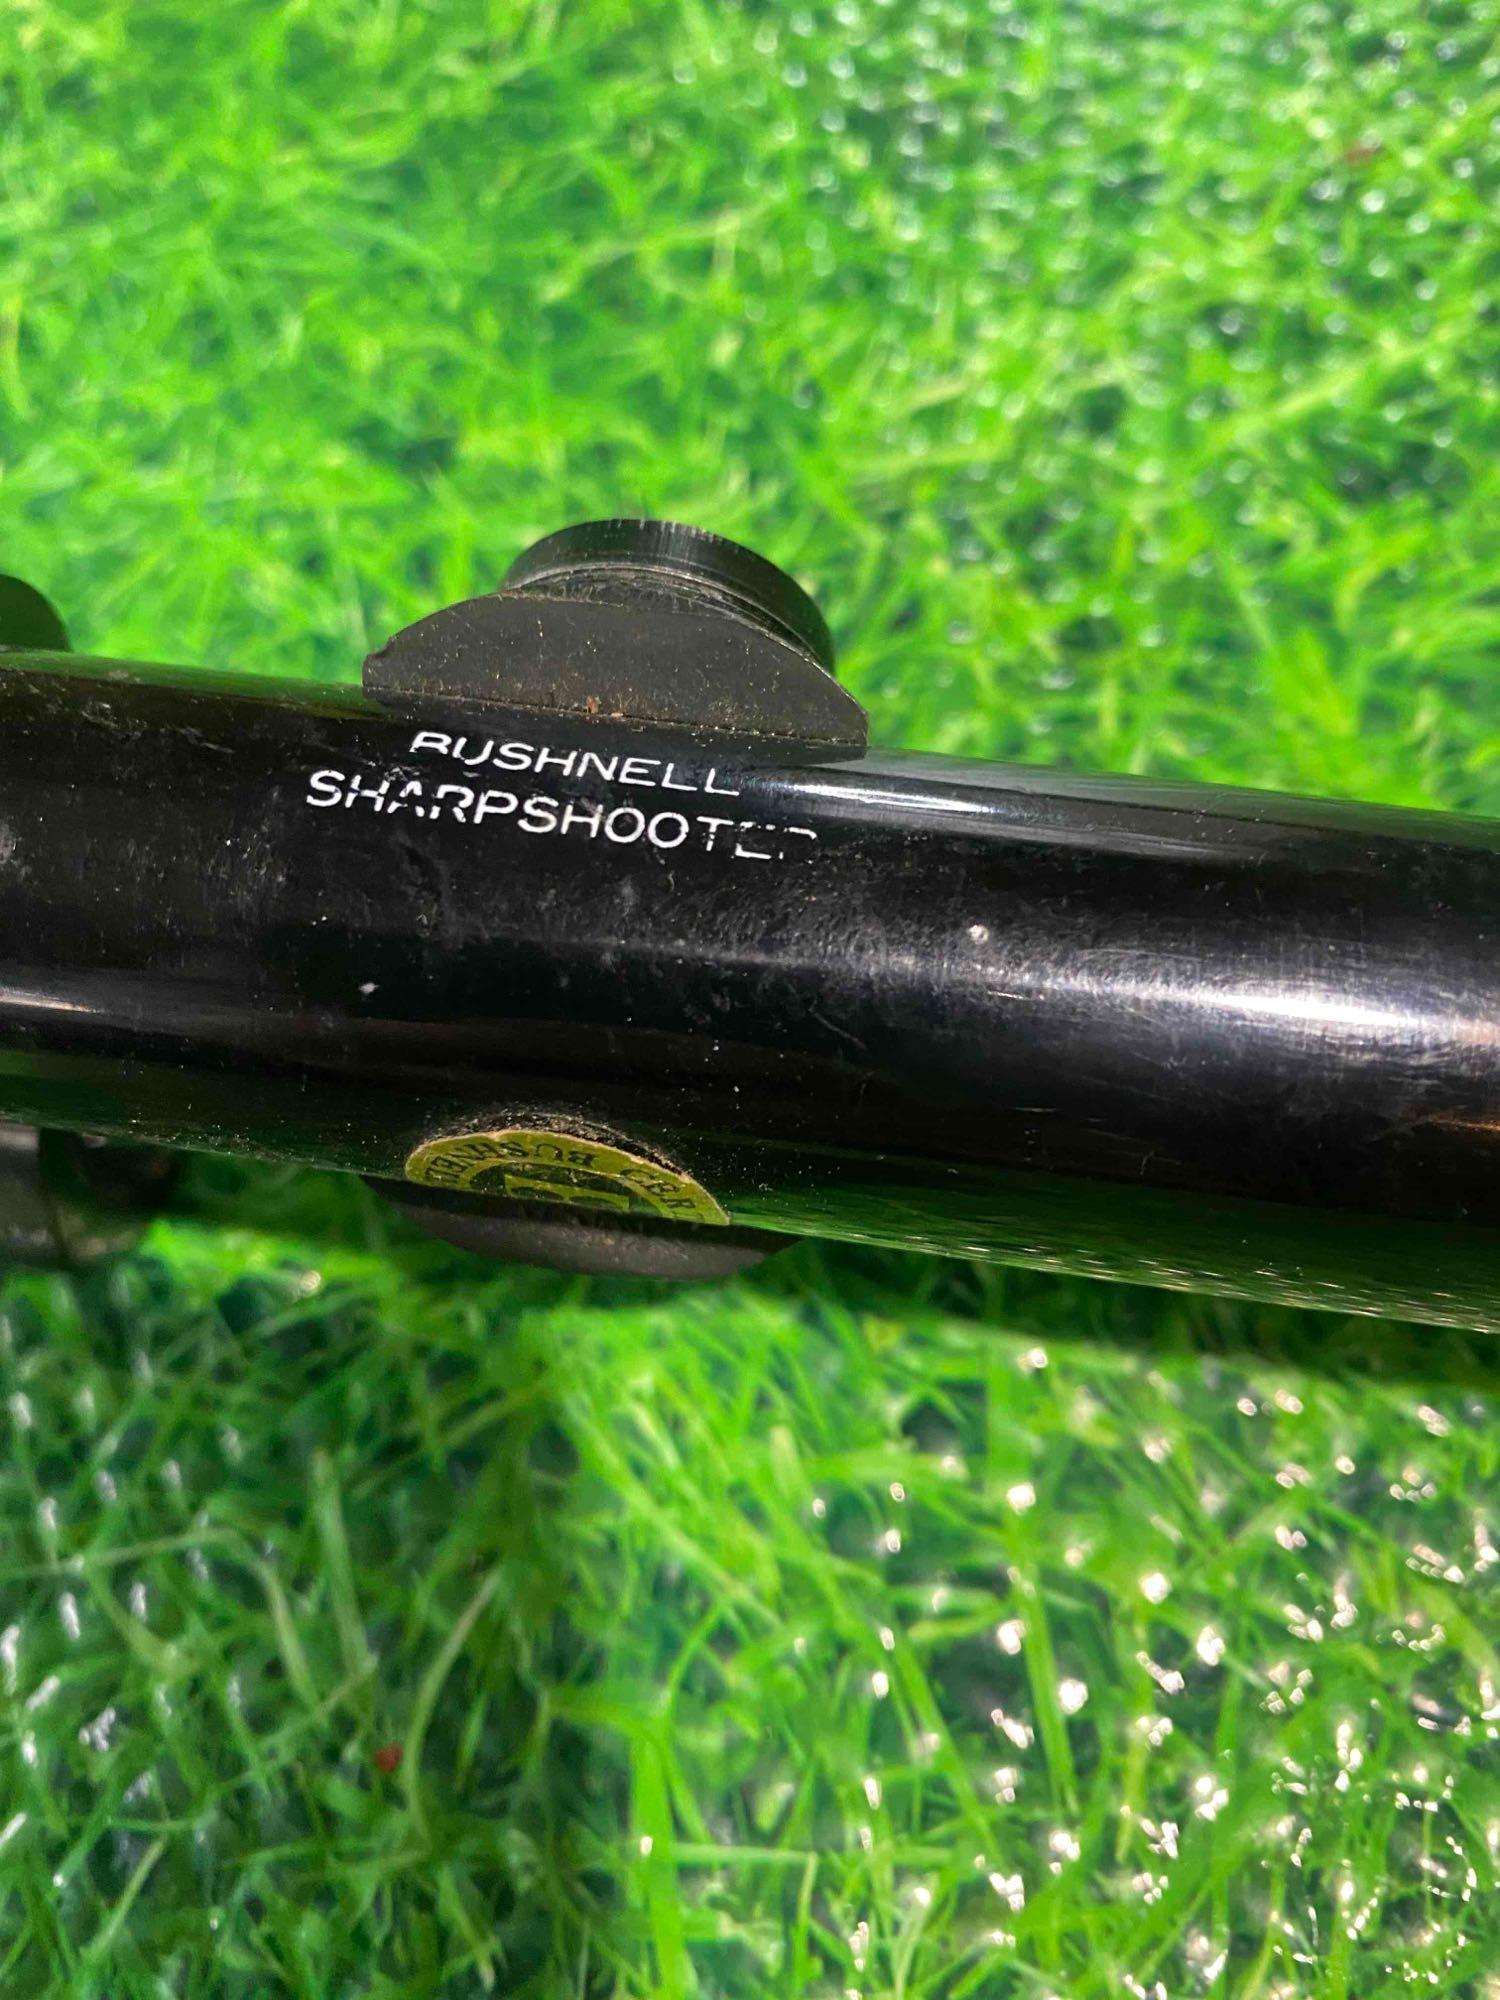 Bushnell sharpshooter scope